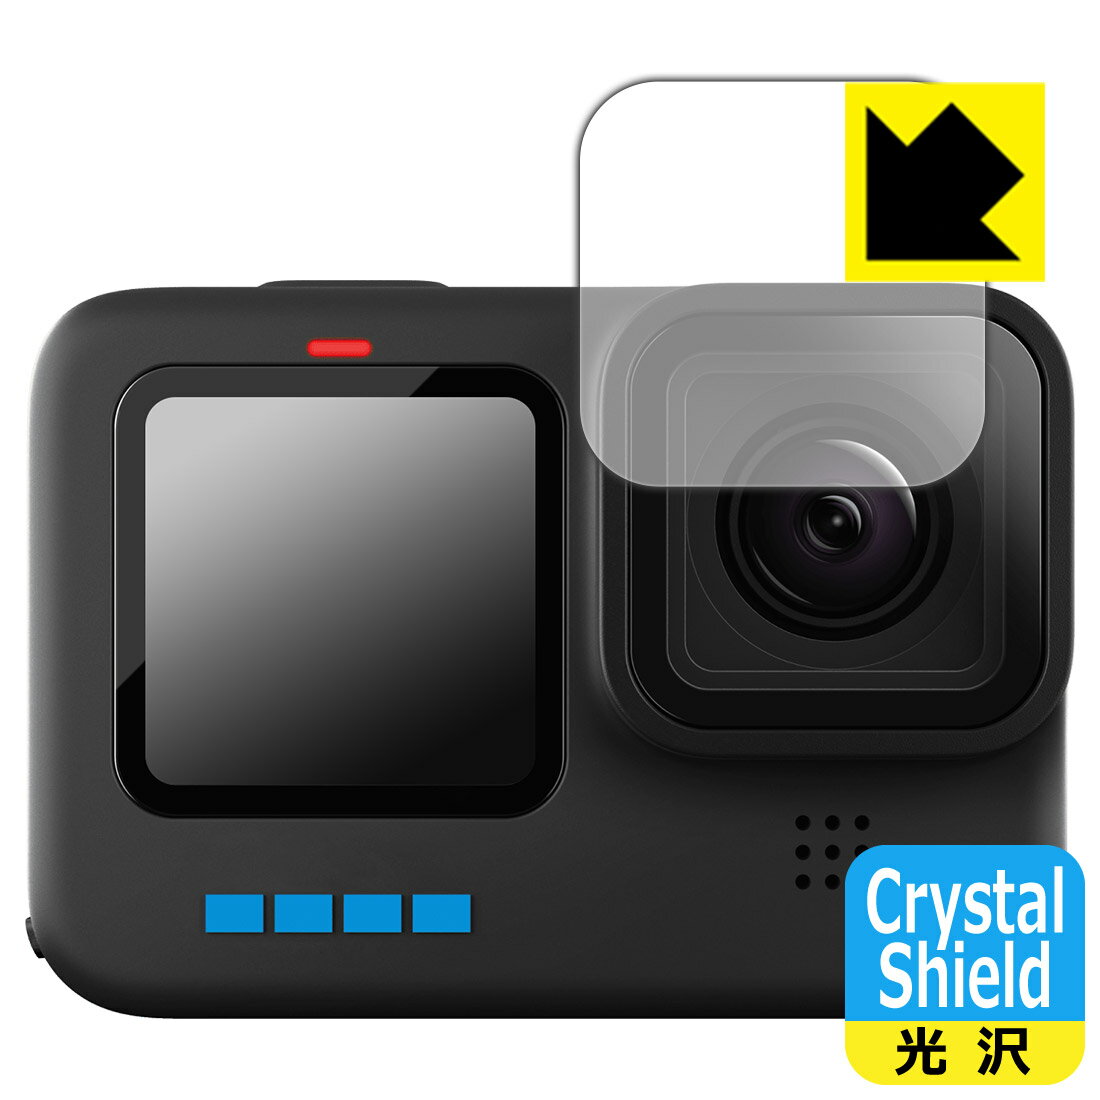 ●対応機種 : GoPro HERO10 Black レンズ部専用の商品です。　※レンズ前のガラス面に貼り付けるため、画像に影響が出る可能性がございます。●内容量 : レンズ部用3枚●「Crystal Shield」は高い透明度と光沢感で、保護フィルムを貼っていないかのようなクリア感のある『光沢タイプの保護フィルム』●安心の国産素材を使用。日本国内の自社工場で製造し出荷しています。【ポスト投函送料無料】商品は【ポスト投函発送 (追跡可能メール便)】で発送します。お急ぎ、配達日時を指定されたい方は以下のクーポンを同時購入ください。【お急ぎ便クーポン】　プラス110円(税込)で速達扱いでの発送。お届けはポストへの投函となります。【配達日時指定クーポン】　プラス550円(税込)で配達日時を指定し、宅配便で発送させていただきます。【お急ぎ便クーポン】はこちらをクリック【配達日時指定クーポン】はこちらをクリック 　 貼っていることを意識させないほどの高い透明度に、高級感あふれる光沢・クリアな仕上げとなります。 動画視聴や画像編集など、機器本来の発色を重視したい方におすすめです。 ハードコート加工がされており、キズや擦れに強くなっています。簡単にキズがつかず長くご利用いただけます。 表面はフッ素コーティングがされており、皮脂や汚れがつきにくく、また、落ちやすくなっています。 指滑りもなめらかで、快適な使用感です。 油性マジックのインクもはじきますので簡単に拭き取れます。 接着面は気泡の入りにくい特殊な自己吸着タイプです。素材に柔軟性があり、貼り付け作業も簡単にできます。また、はがすときにガラス製フィルムのように割れてしまうことはありません。 貼り直しが何度でもできるので、正しい位置へ貼り付けられるまでやり直すことができます。 抗菌加工によりフィルム表面の菌の繁殖を抑えることができます。清潔な画面を保ちたい方におすすめです。 ※抗菌率99.9％ / JIS Z2801 抗菌性試験方法による評価 最高級グレードの国産素材を日本国内の弊社工場で加工している完全な Made in Japan です。安心の品質をお届けします。 使用上の注意 ●本製品は機器の画面をキズなどから保護するフィルムです。他の目的にはご使用にならないでください。 ●本製品は液晶保護および機器本体を完全に保護することを保証するものではありません。機器の破損、損傷、故障、その他損害につきましては一切の責任を負いかねます。 ●製品の性質上、画面操作の反応が変化したり、表示等が変化して見える場合がございます。 ●貼り付け作業時の失敗(位置ズレ、汚れ、ゆがみ、折れ、気泡など)および取り外し作業時の破損、損傷などについては、一切の責任を負いかねます。 ●水に濡れた状態でのご使用は吸着力の低下などにより、保護フィルムがはがれてしまう場合がございます。防水対応の機器でご使用の場合はご注意ください。 ●アルコール類やその他薬剤を本製品に付着させないでください。表面のコーティングや吸着面が変質するおそれがあります。 ●品質向上のため、仕様などを予告なく変更する場合がございますので、予めご了承ください。